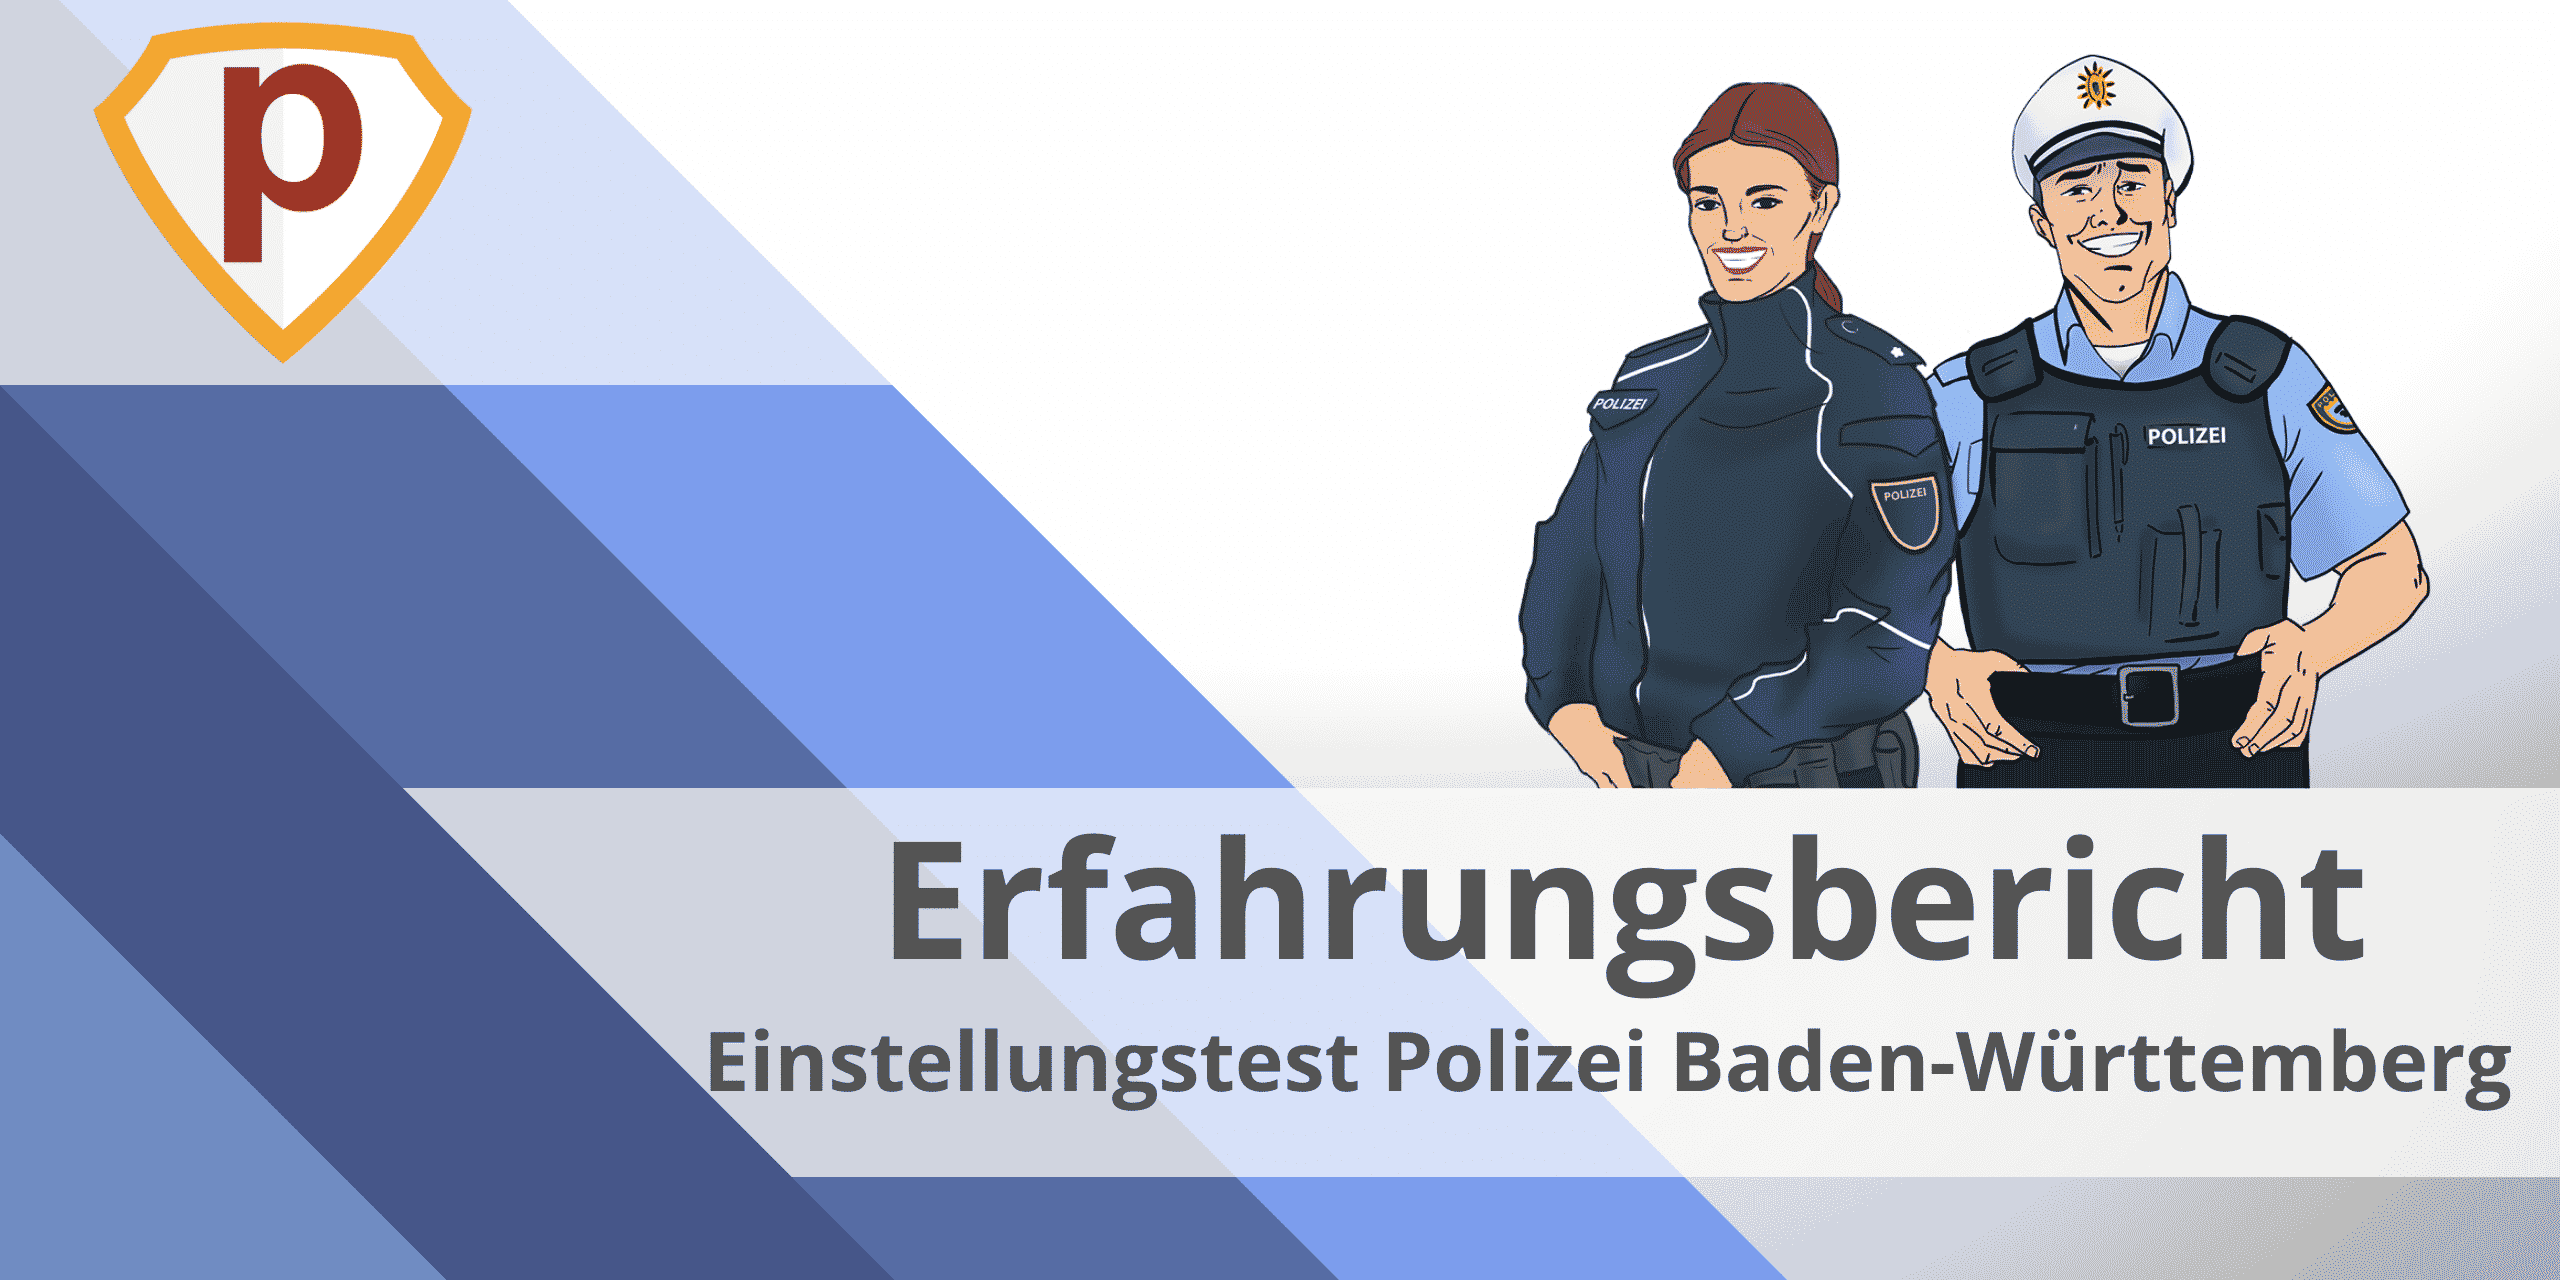 Erfahrungsbericht Einstellungstest Polizei Baden-Württemberg